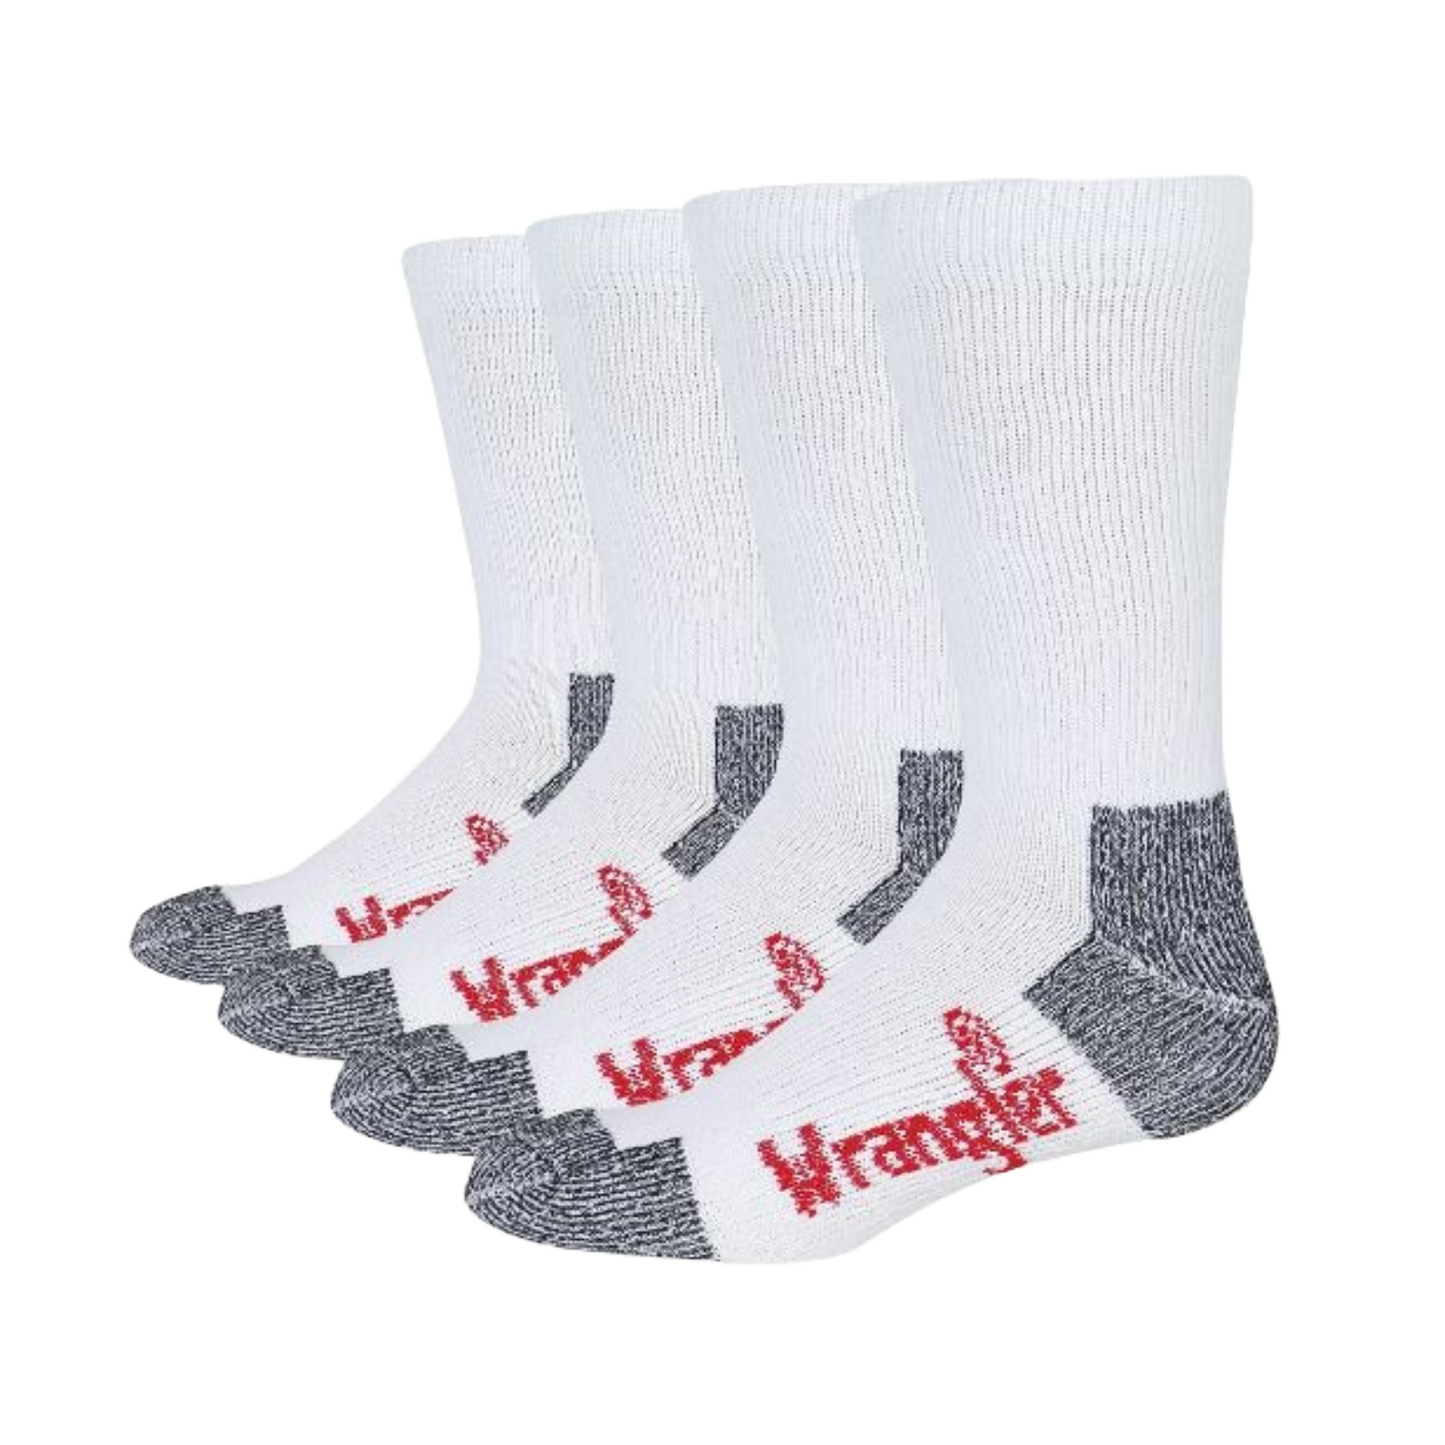 Wrangler® Riggs Men's Cotton Over The Calf White Work Boot Socks 2 Pack 2/72435-1000-LG